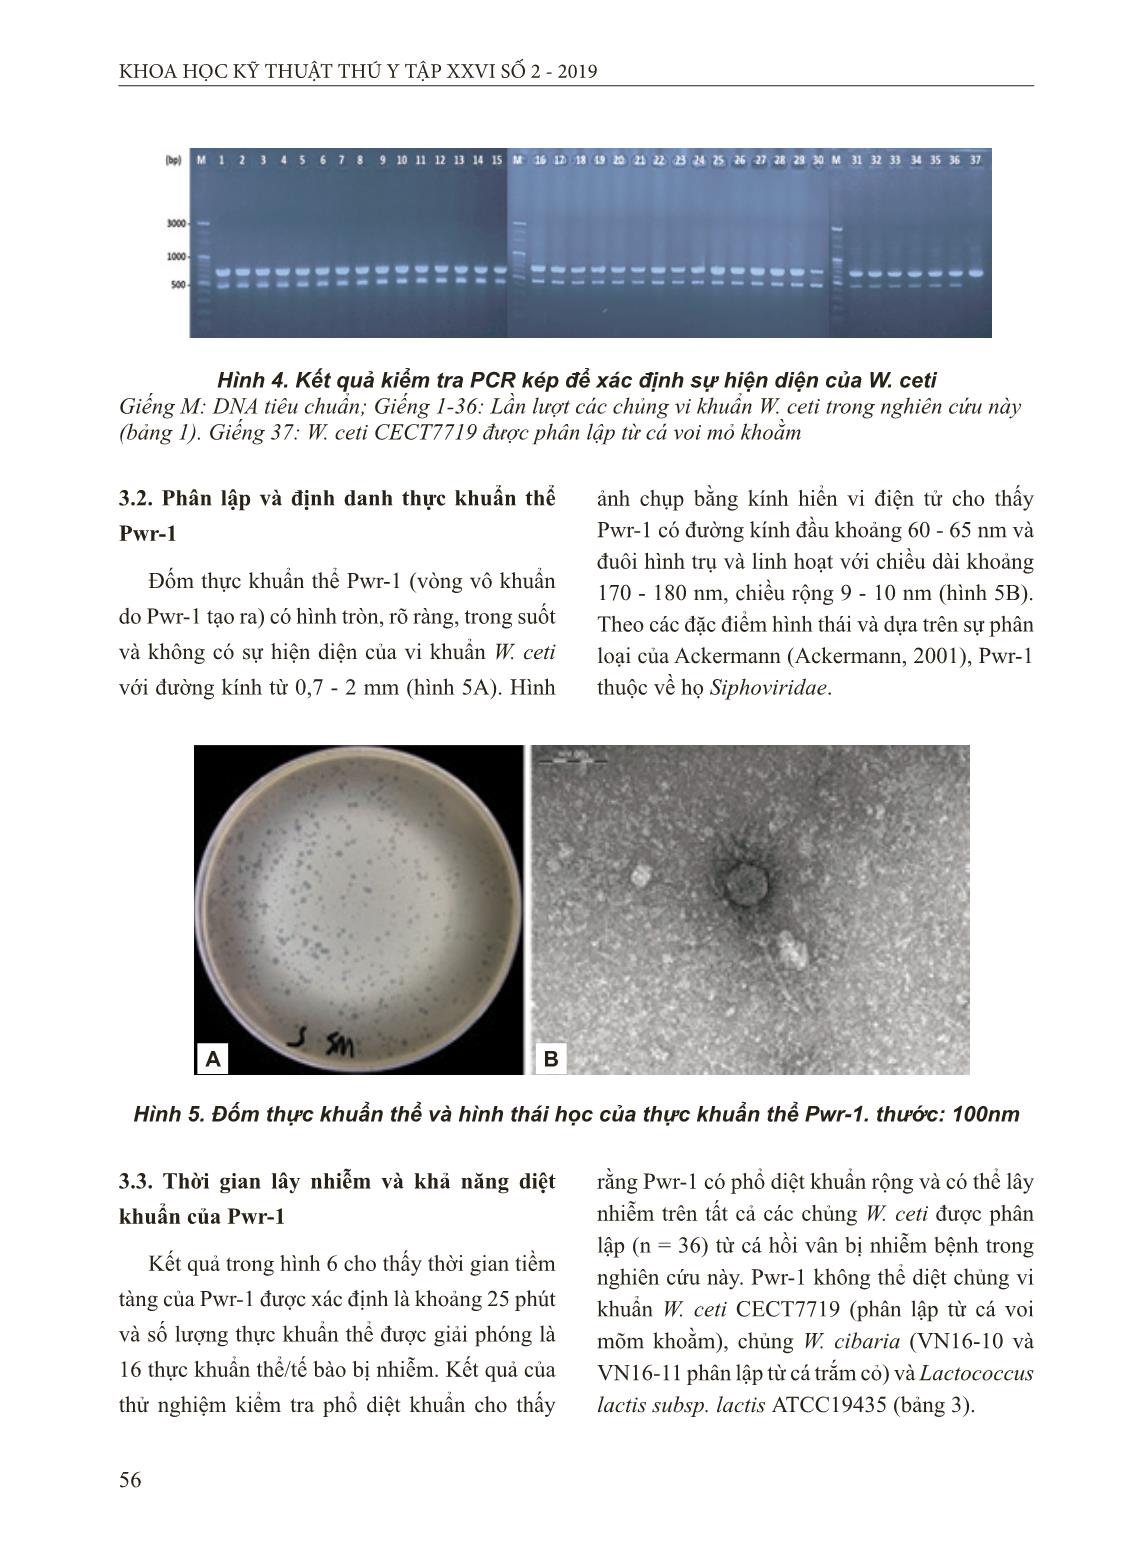 Bệnh vi khuẩn mới nổi nguy hiểm ở cá hồi vân và nghiên cứu ứng dụng liệu pháp thực khuẩn thể trong phòng trị bệnh trang 8